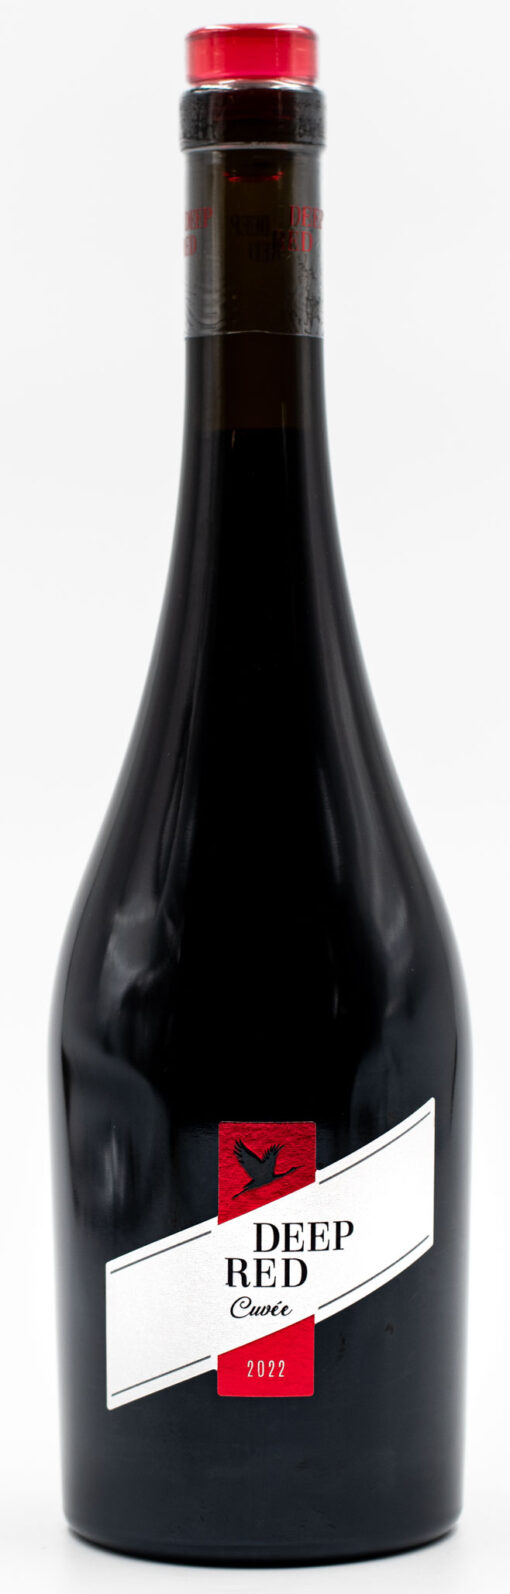 Fľaša bulharského Deep Red cuvée z vinárstva Domaine Boyar